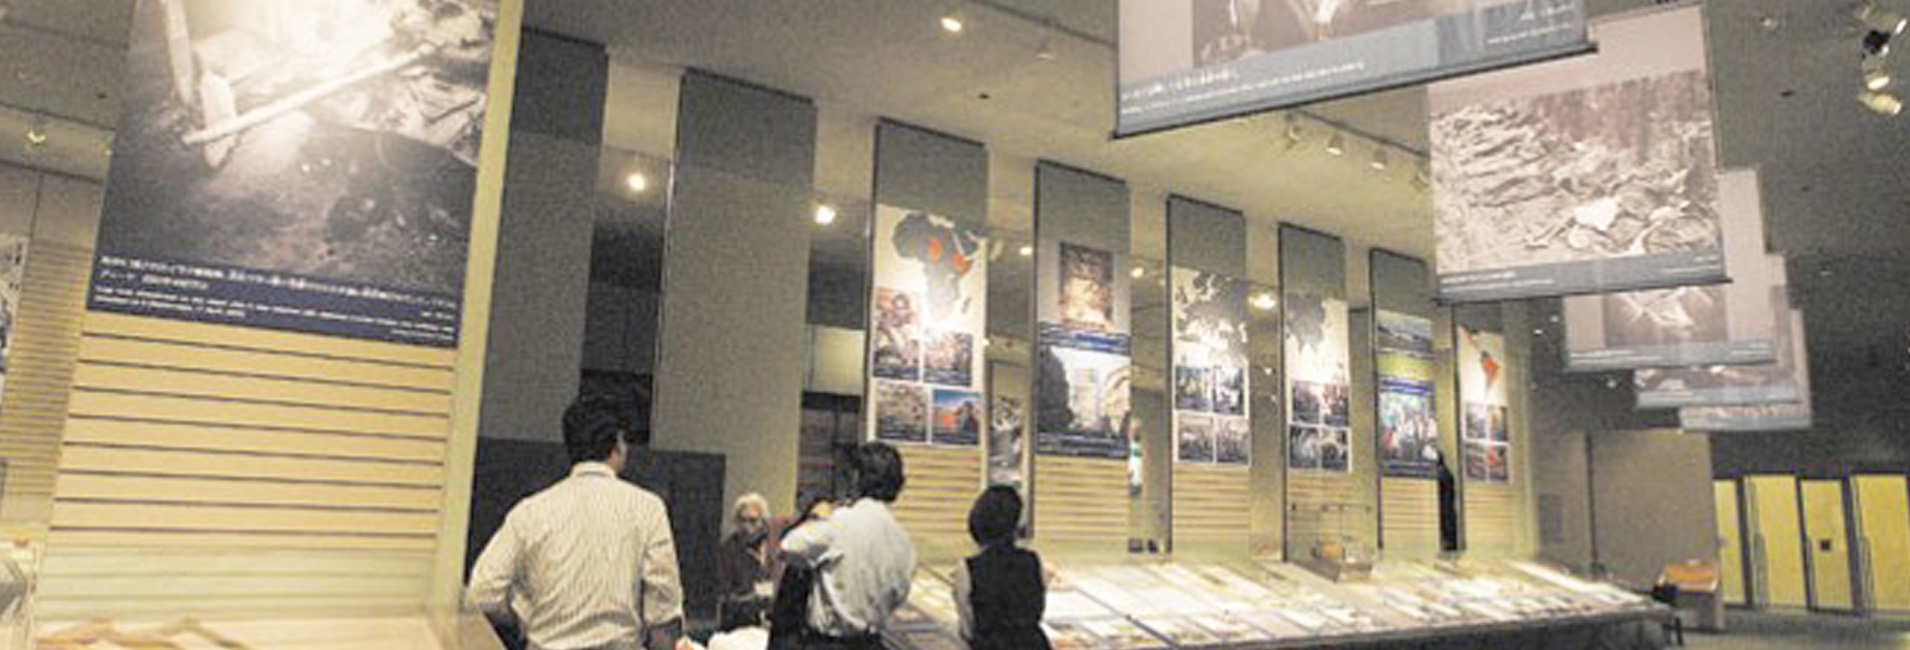 アクア琵琶湖訪問と立命館国際平和ミュージアムの訪問